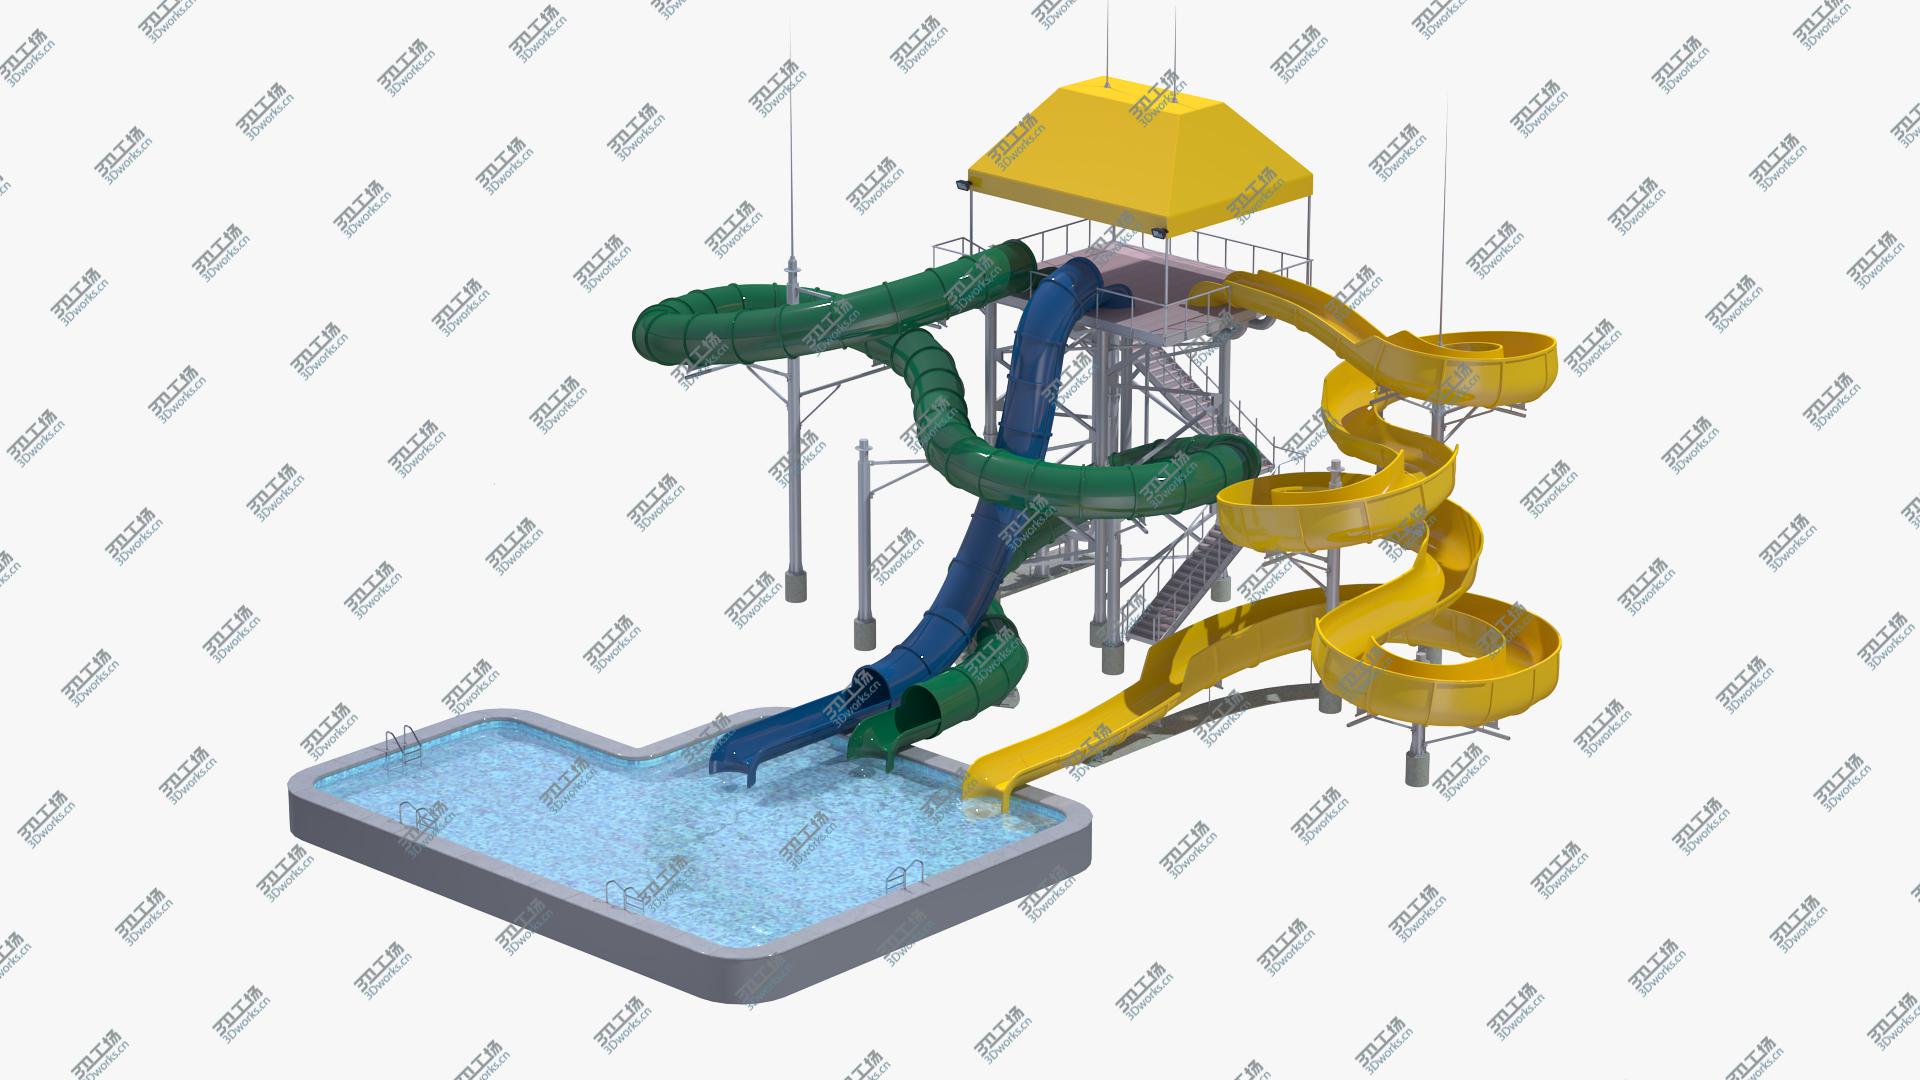 images/goods_img/2021040234/Body Slide Attraction 3D model/2.jpg